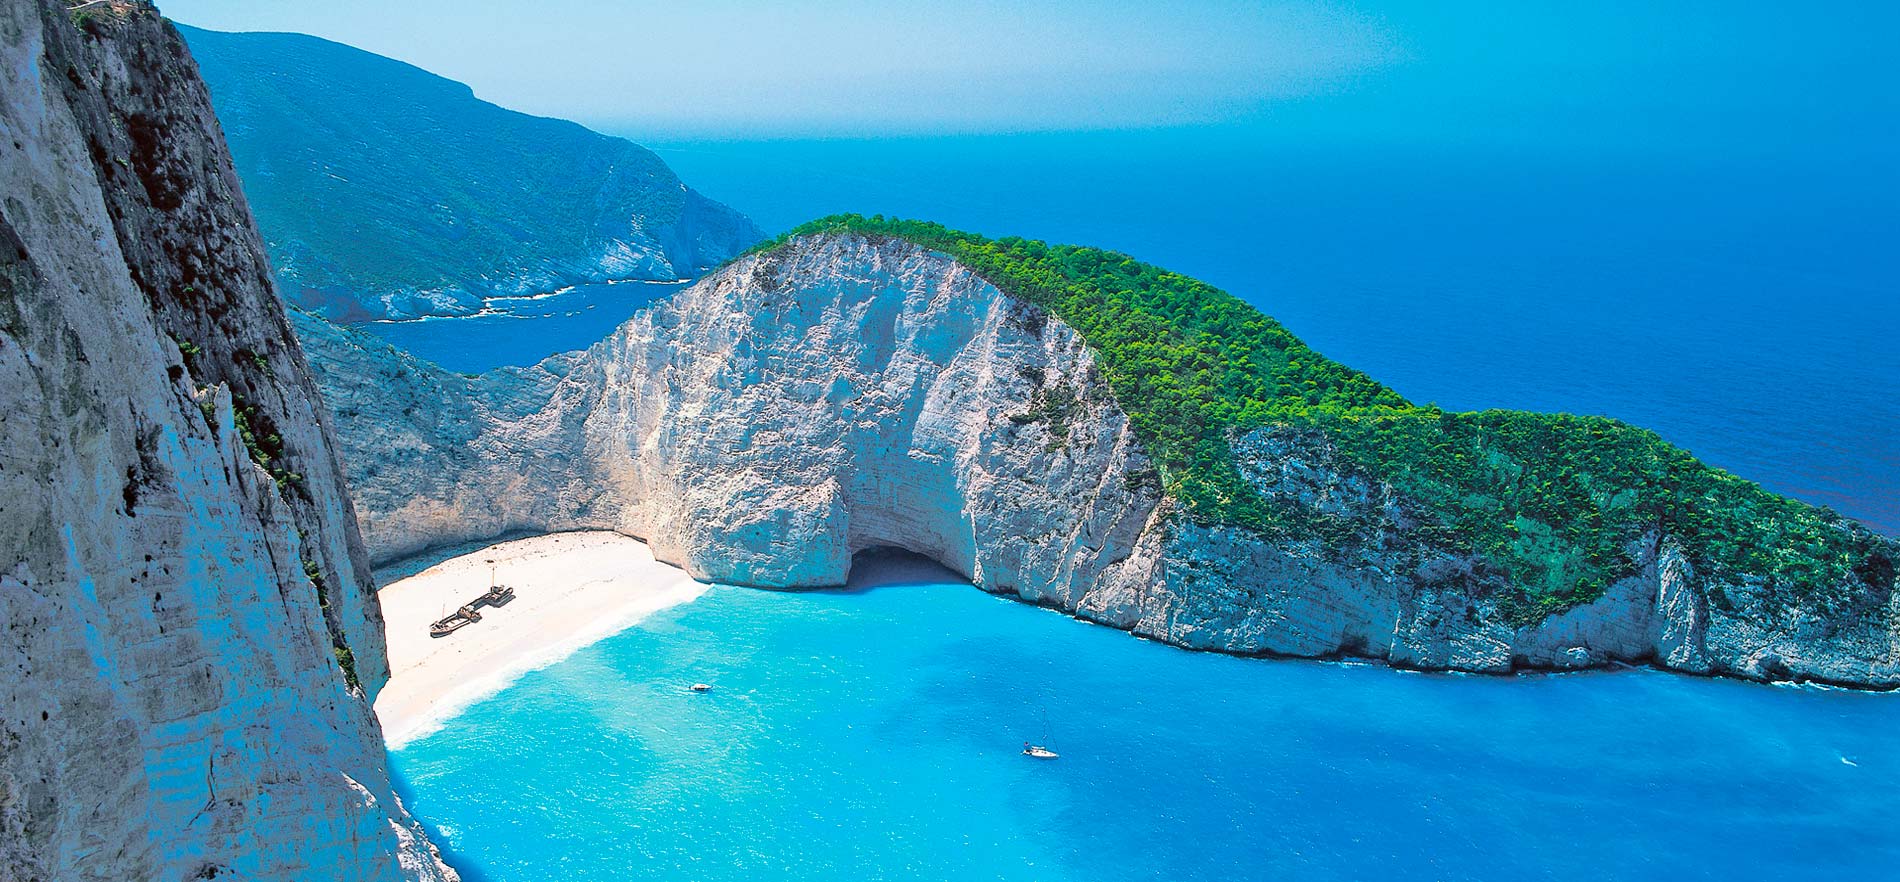 Туристическая страховка для поездки в Грецию